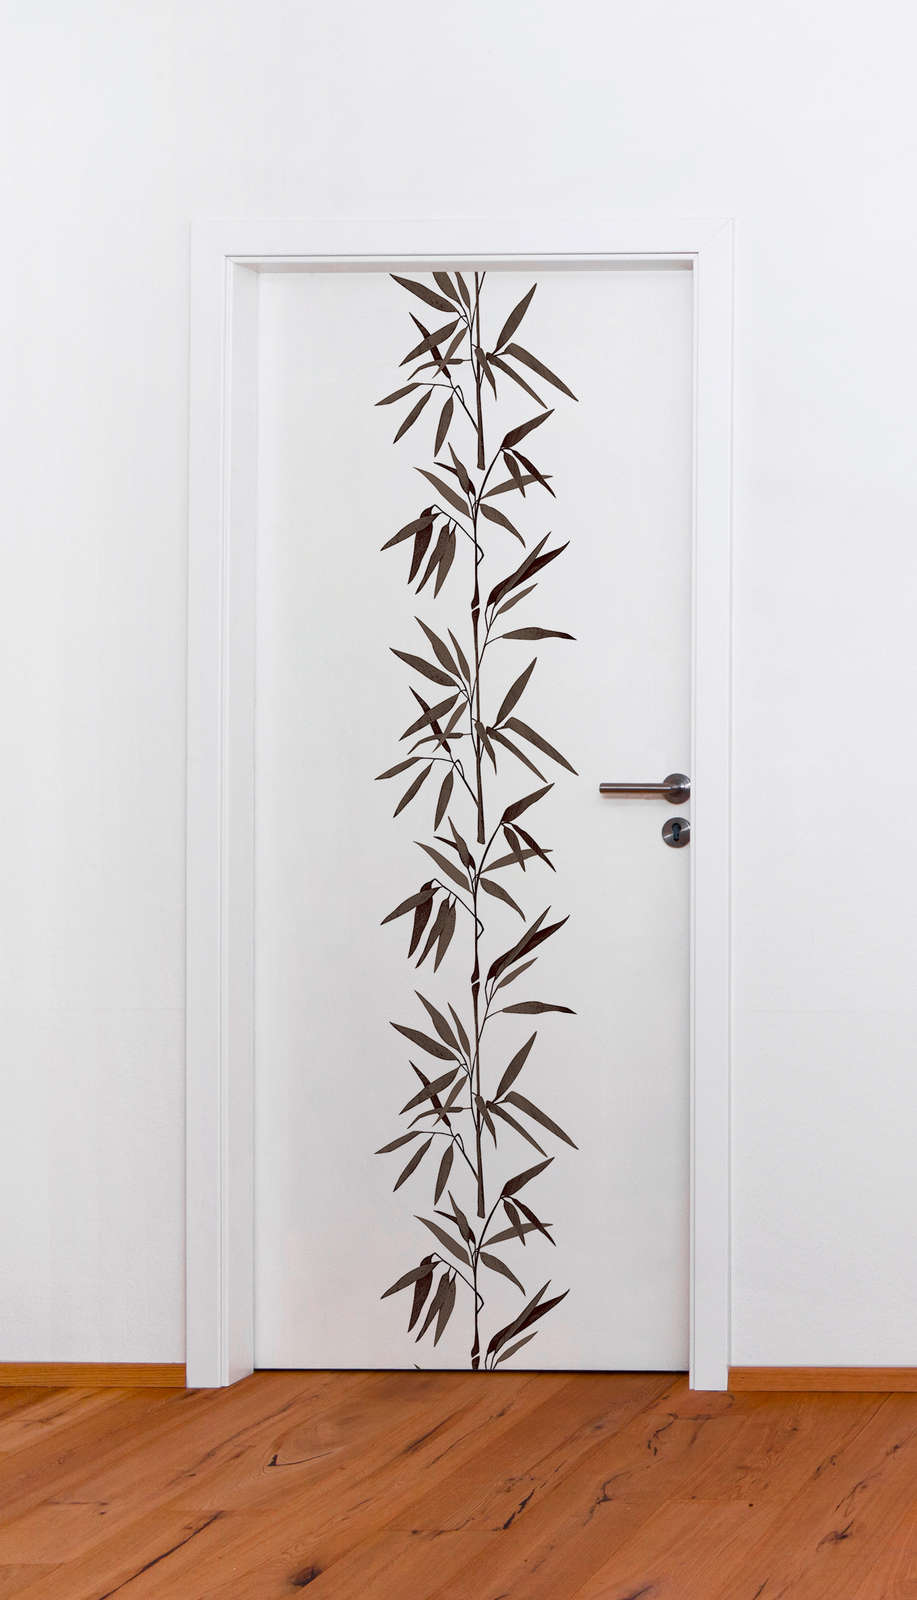             Papel pintado no tejido en blanco y negro con motivo de bambú
        